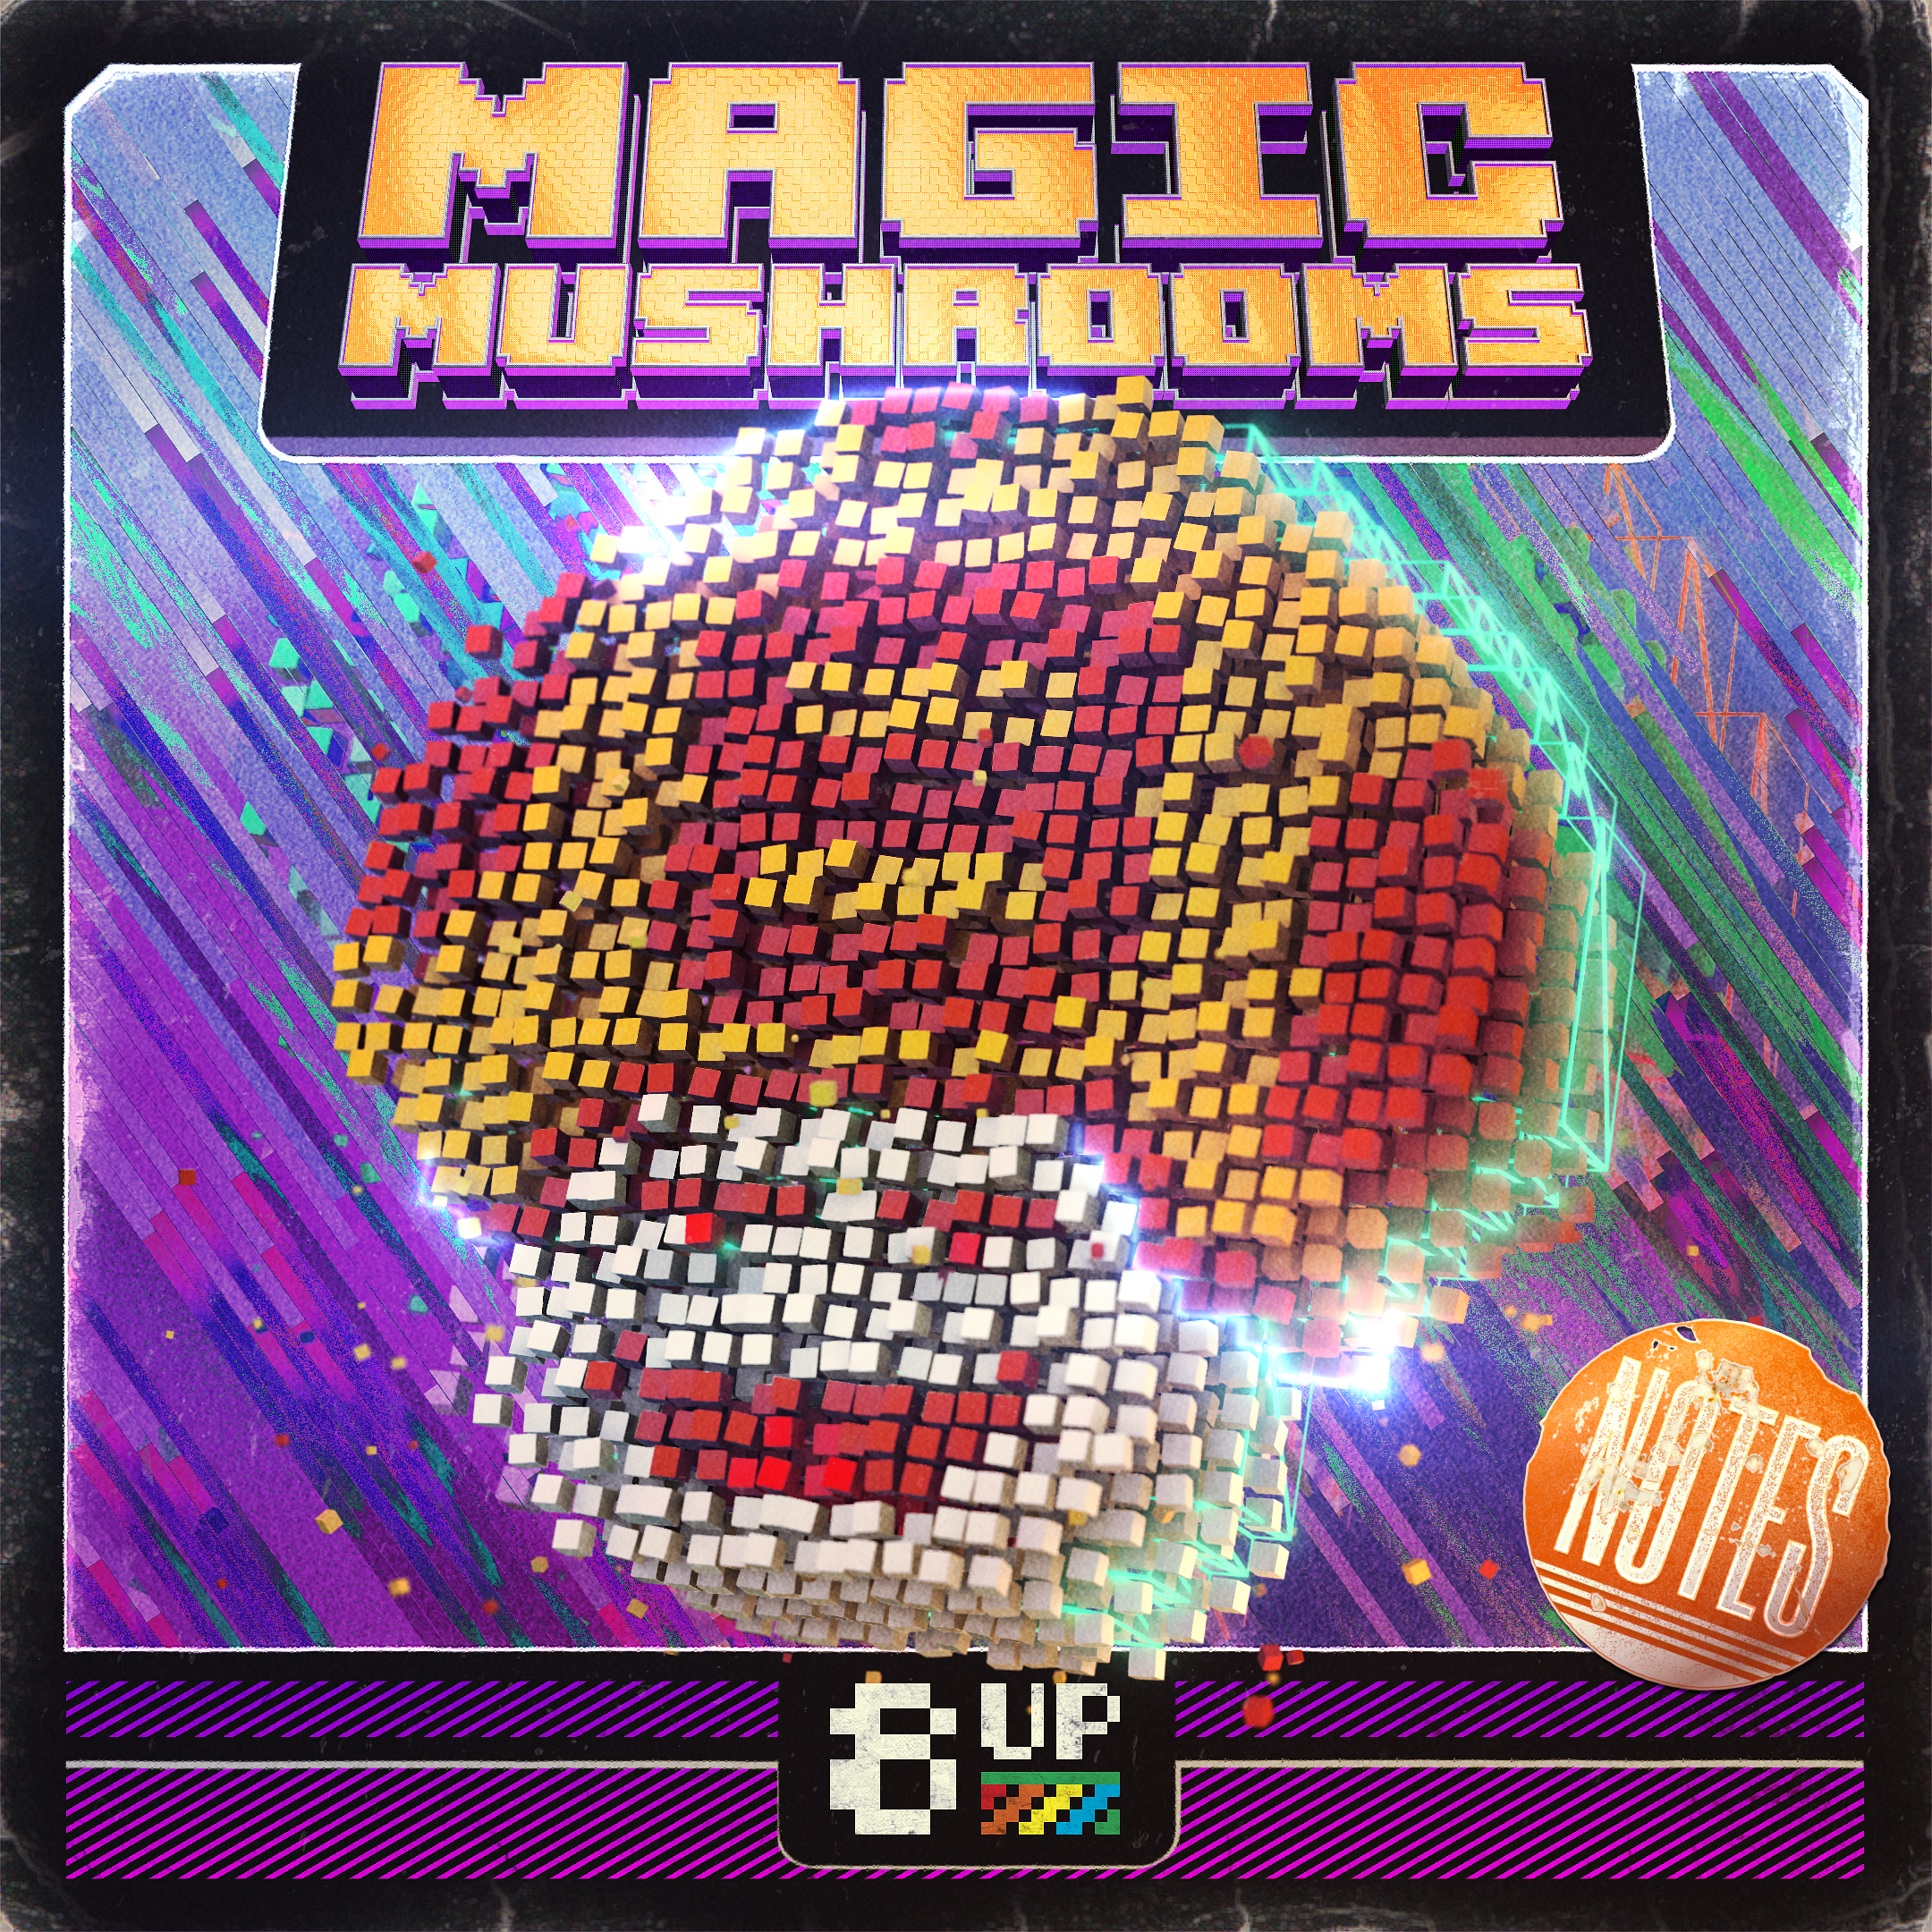 Magic Mushrooms Notes Packshot by 8UP